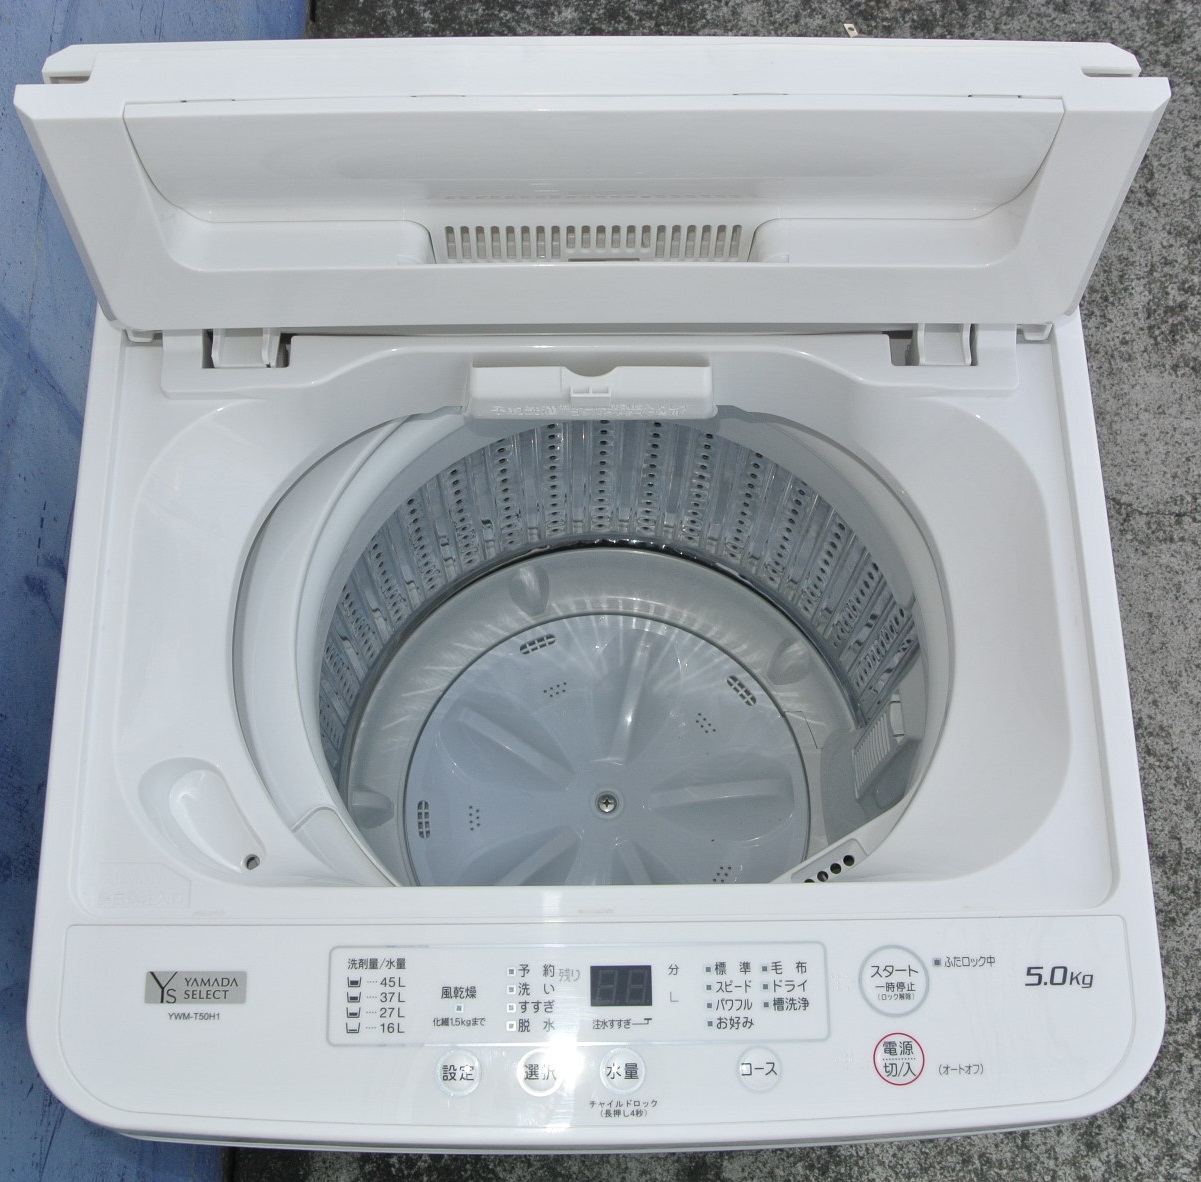 全自動洗濯機 5.0kg 2020年製 ヤマダセレクト YWM-T50H1 ホワイト 